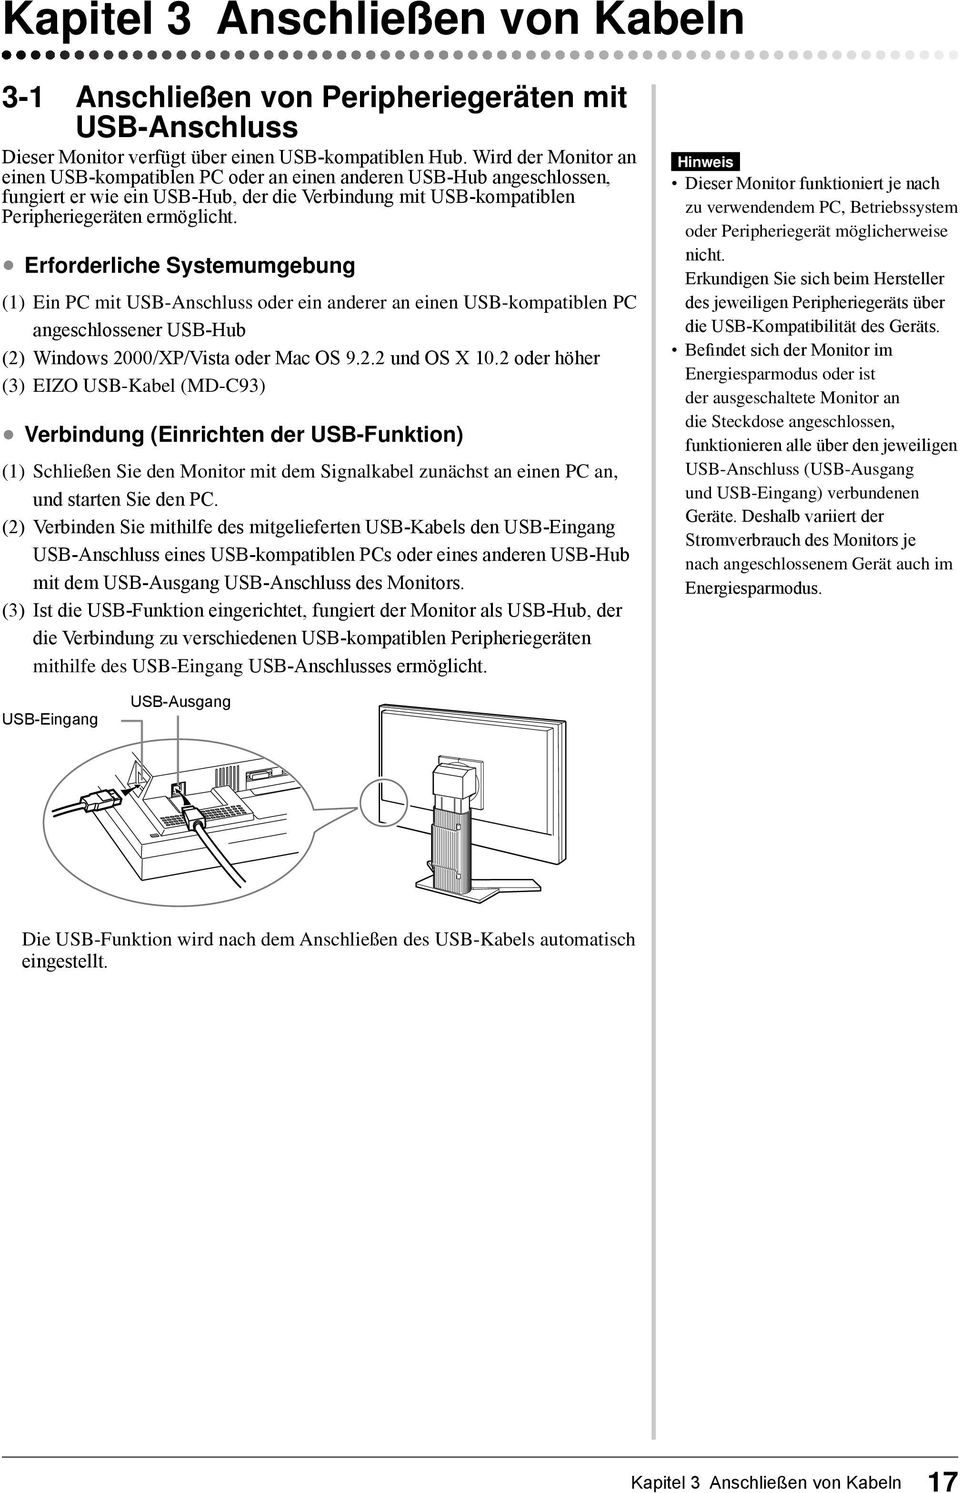 Erforderliche Systemumgebung (1) Ein PC mit USB-Anschluss oder ein anderer an einen USB-kompatiblen PC angeschlossener USB-Hub (2) Windows 2000/XP/Vista oder Mac OS 9.2.2 und OS X 10.